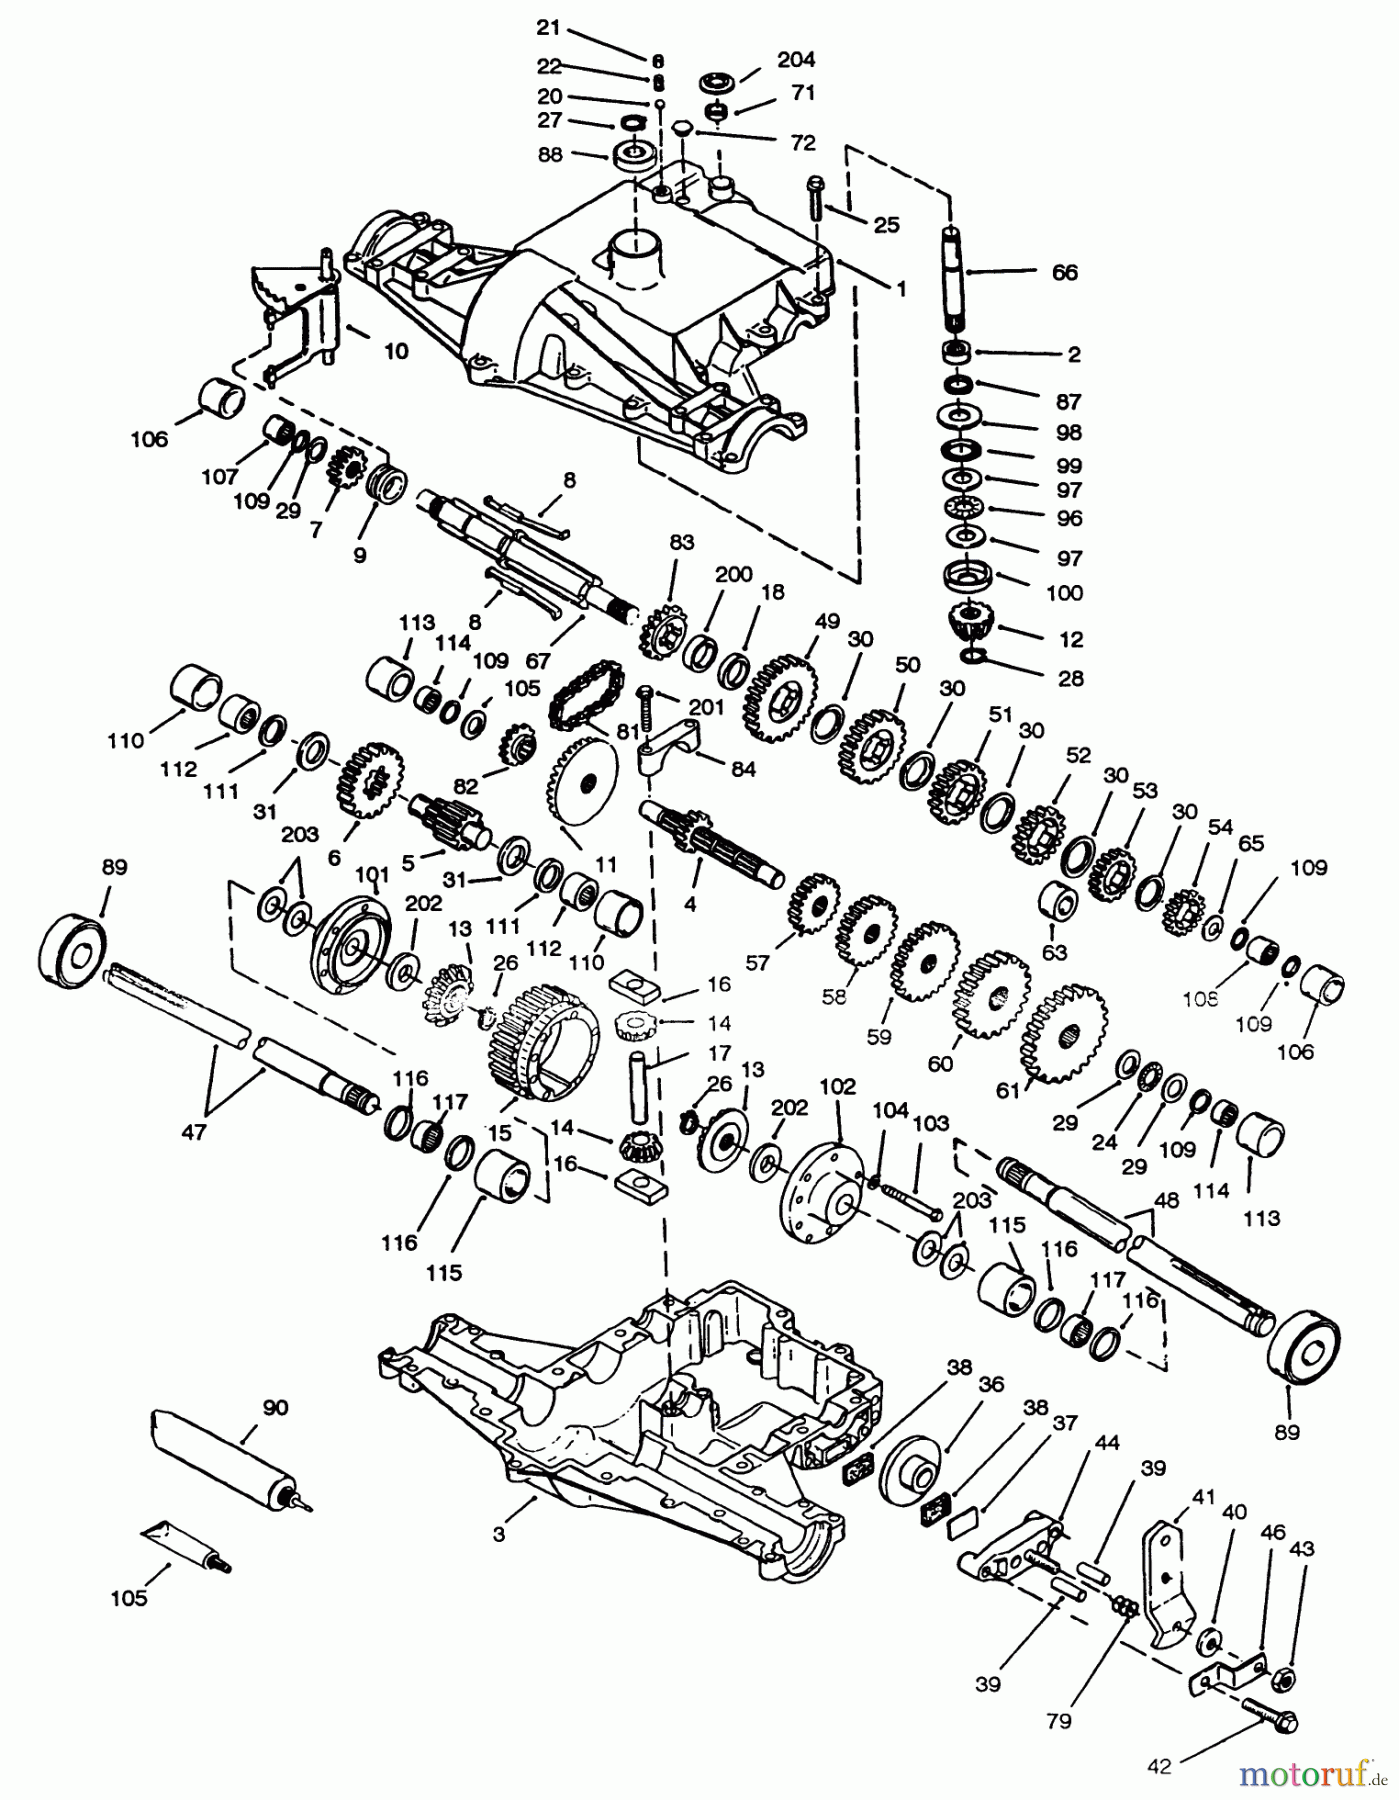  Toro Neu Mowers, Lawn & Garden Tractor Seite 1 72042 (264-6) - Toro 264-6 Yard Tractor, 1994 (4900001-4999999) PEERLESS TRANSAXLE 820-024